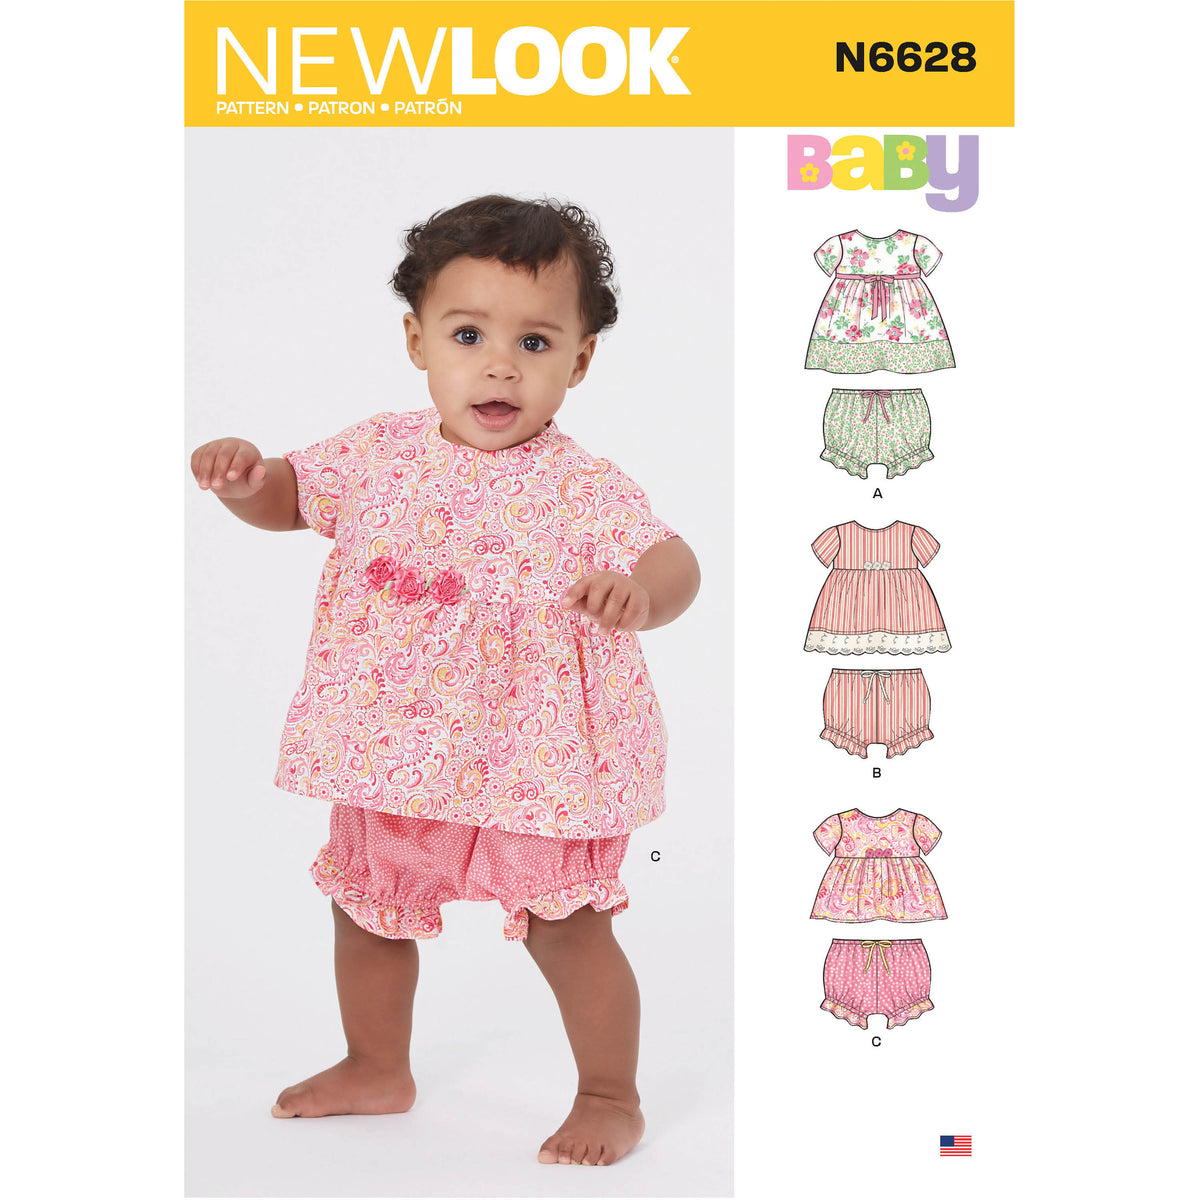 6628 New Look Sewing Pattern N6628 Babies' Sportswear